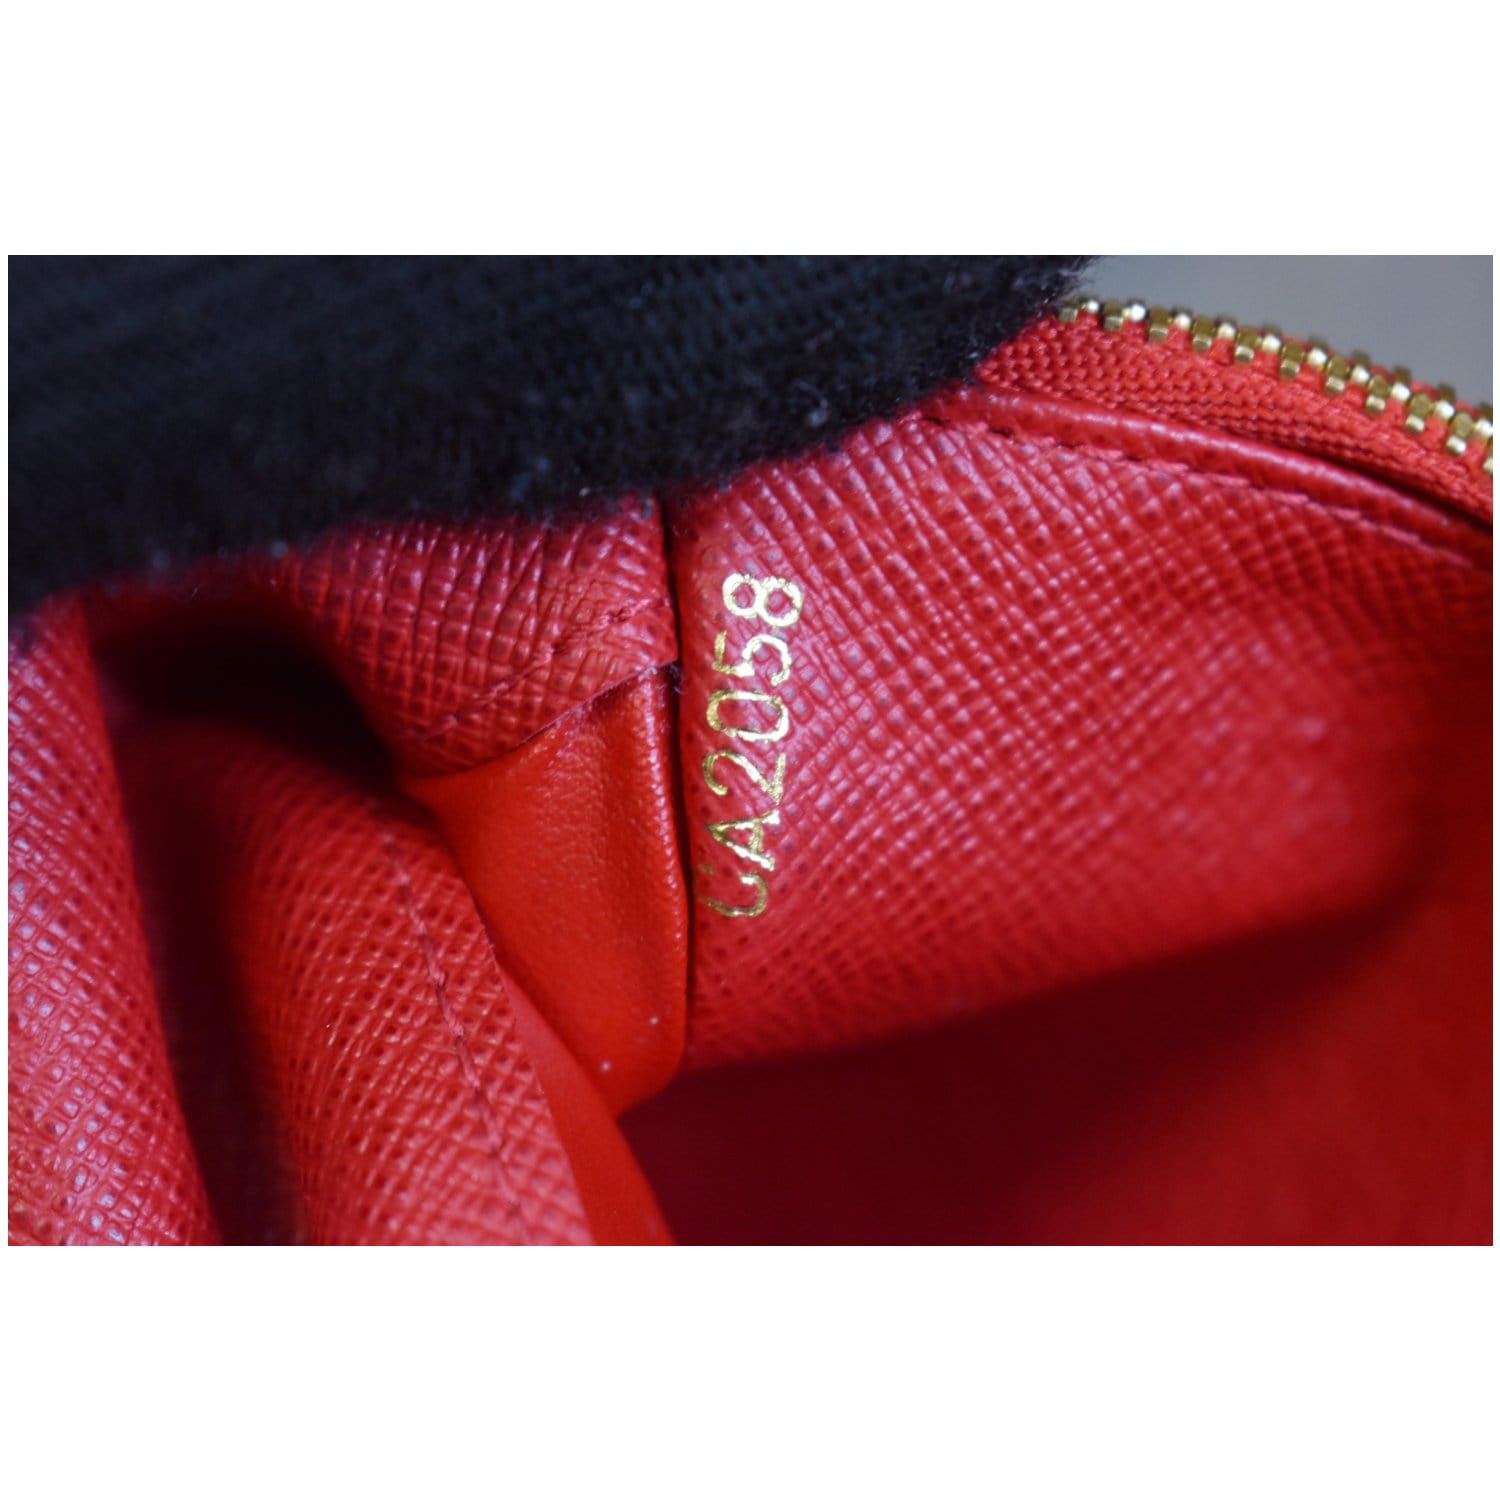 Louis Vuitton, Bags, Louis Vuitton Monogram Insolite Wallet Ca422